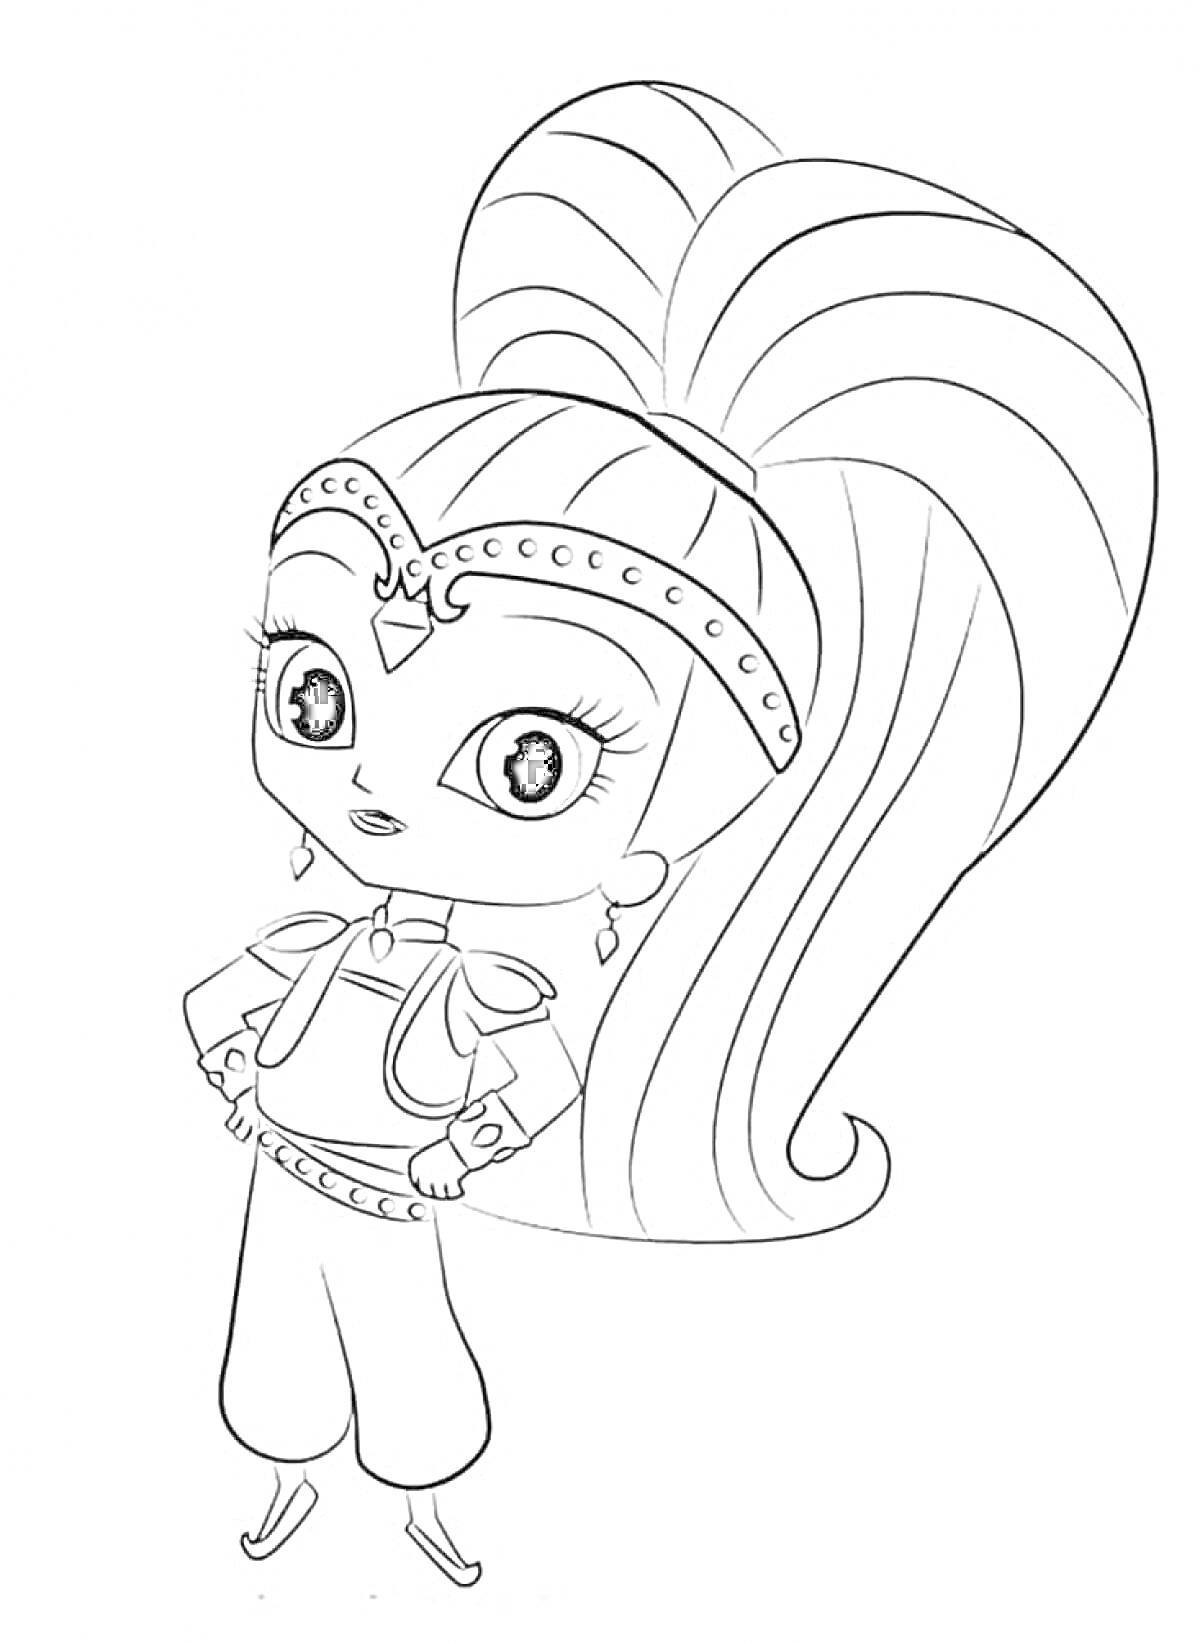 Девочка-джин с длинным хвостом на голове и браслетами на руках из мультфильма 